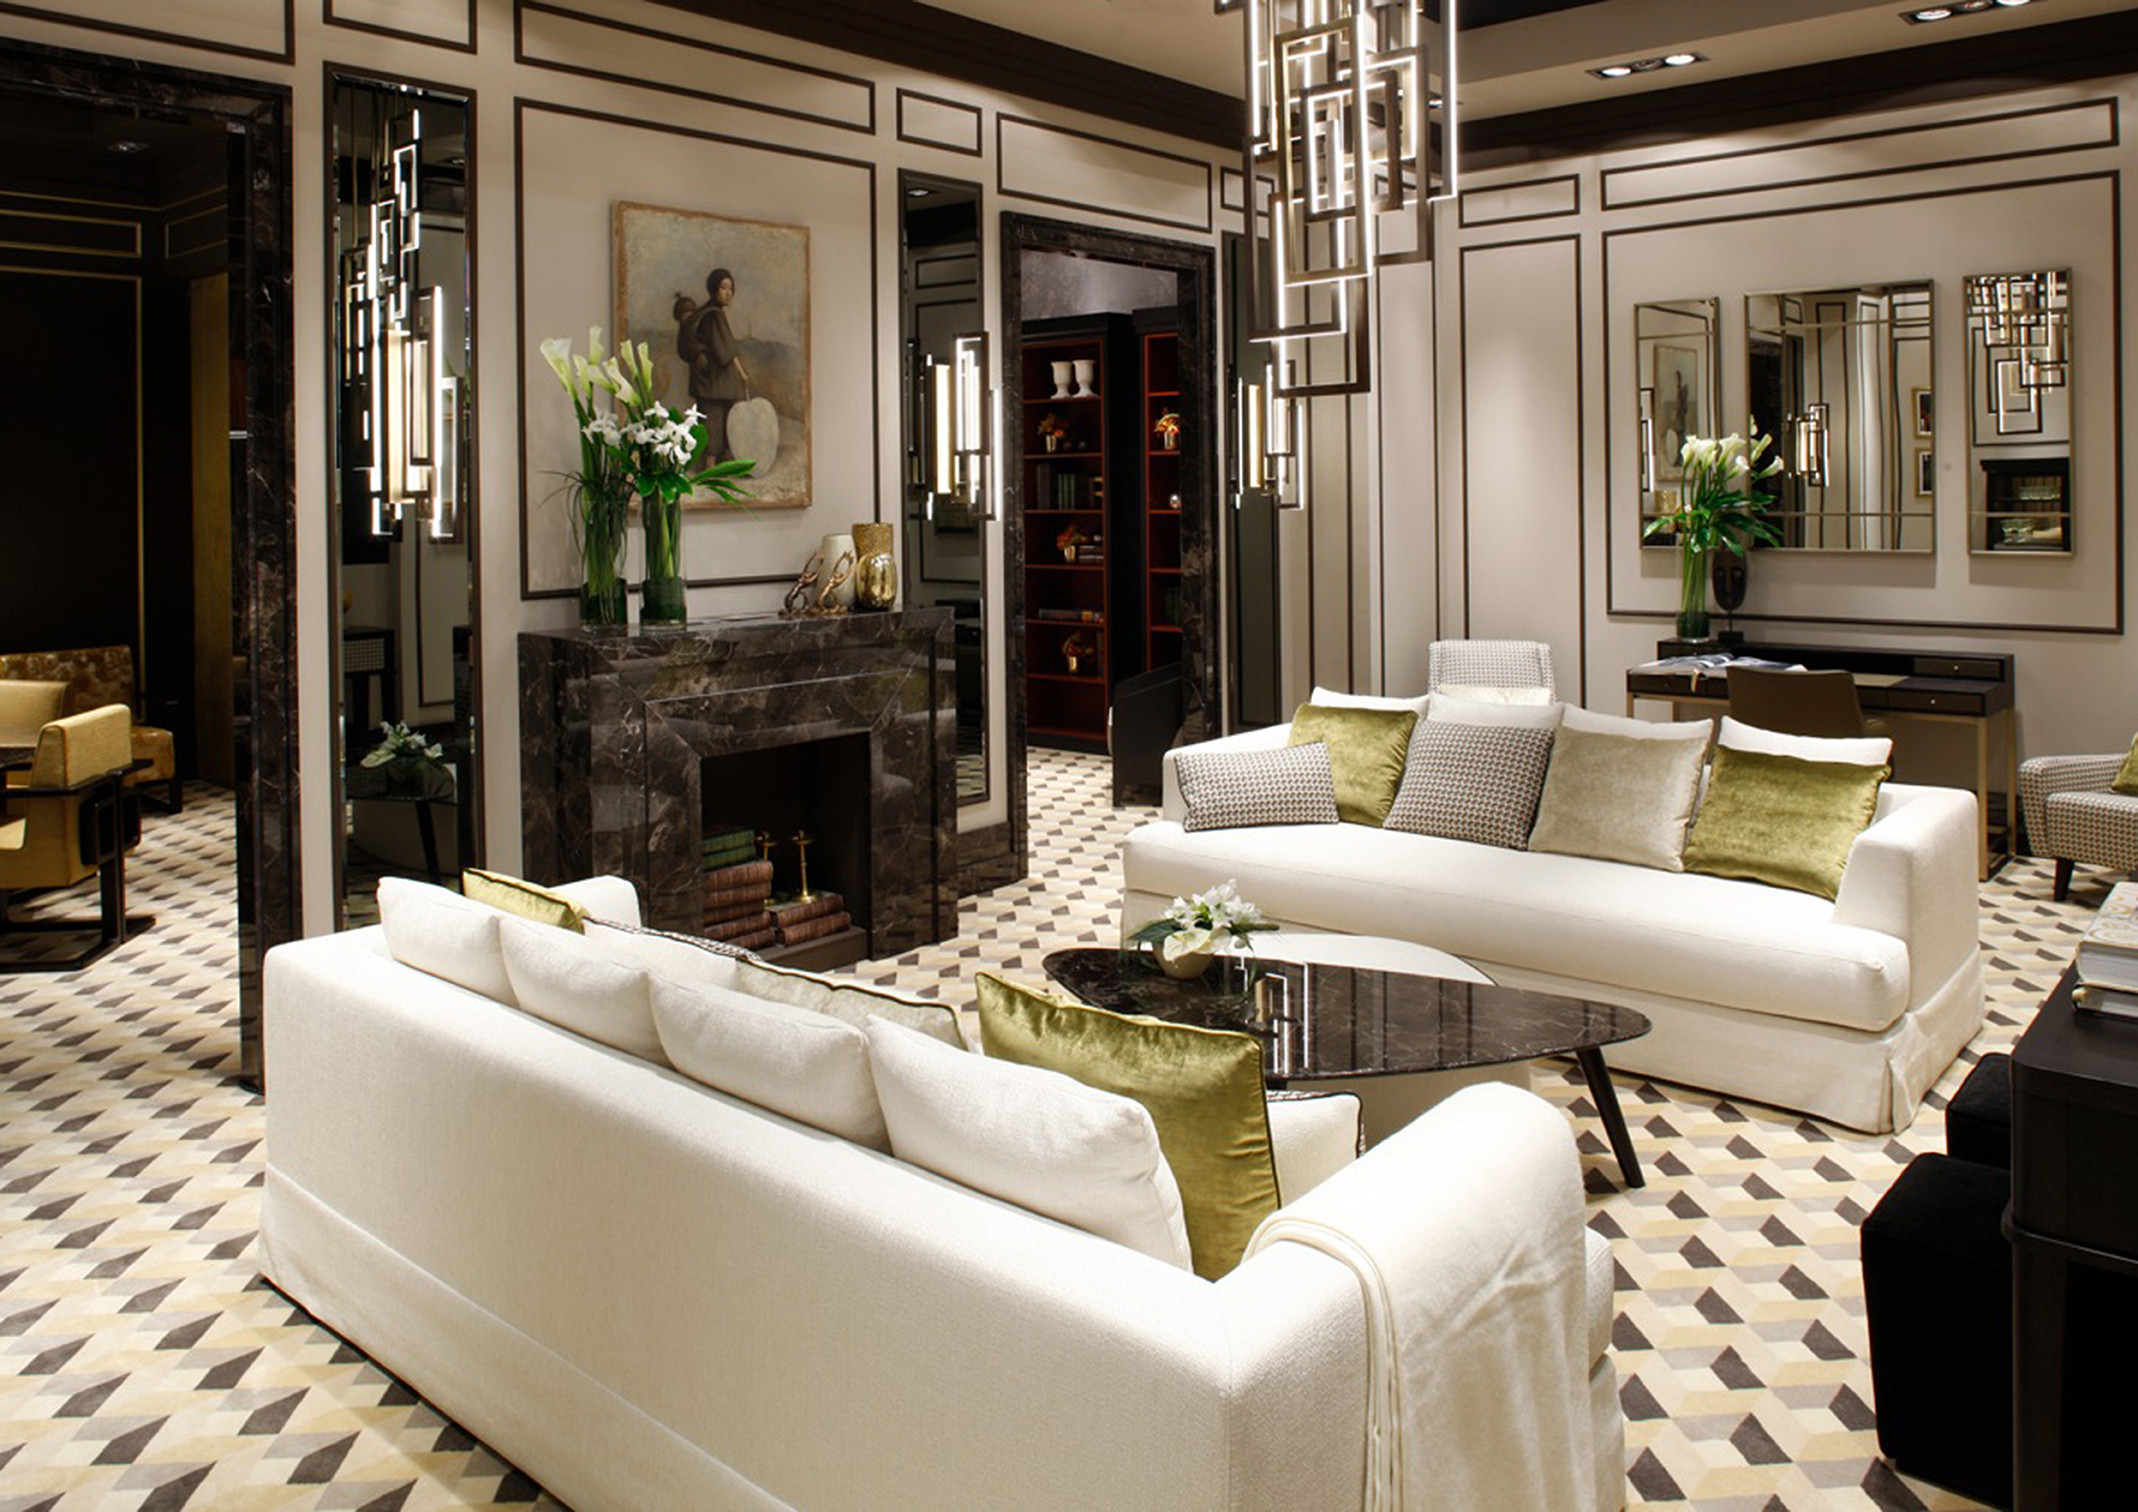 luxury apartment rooms